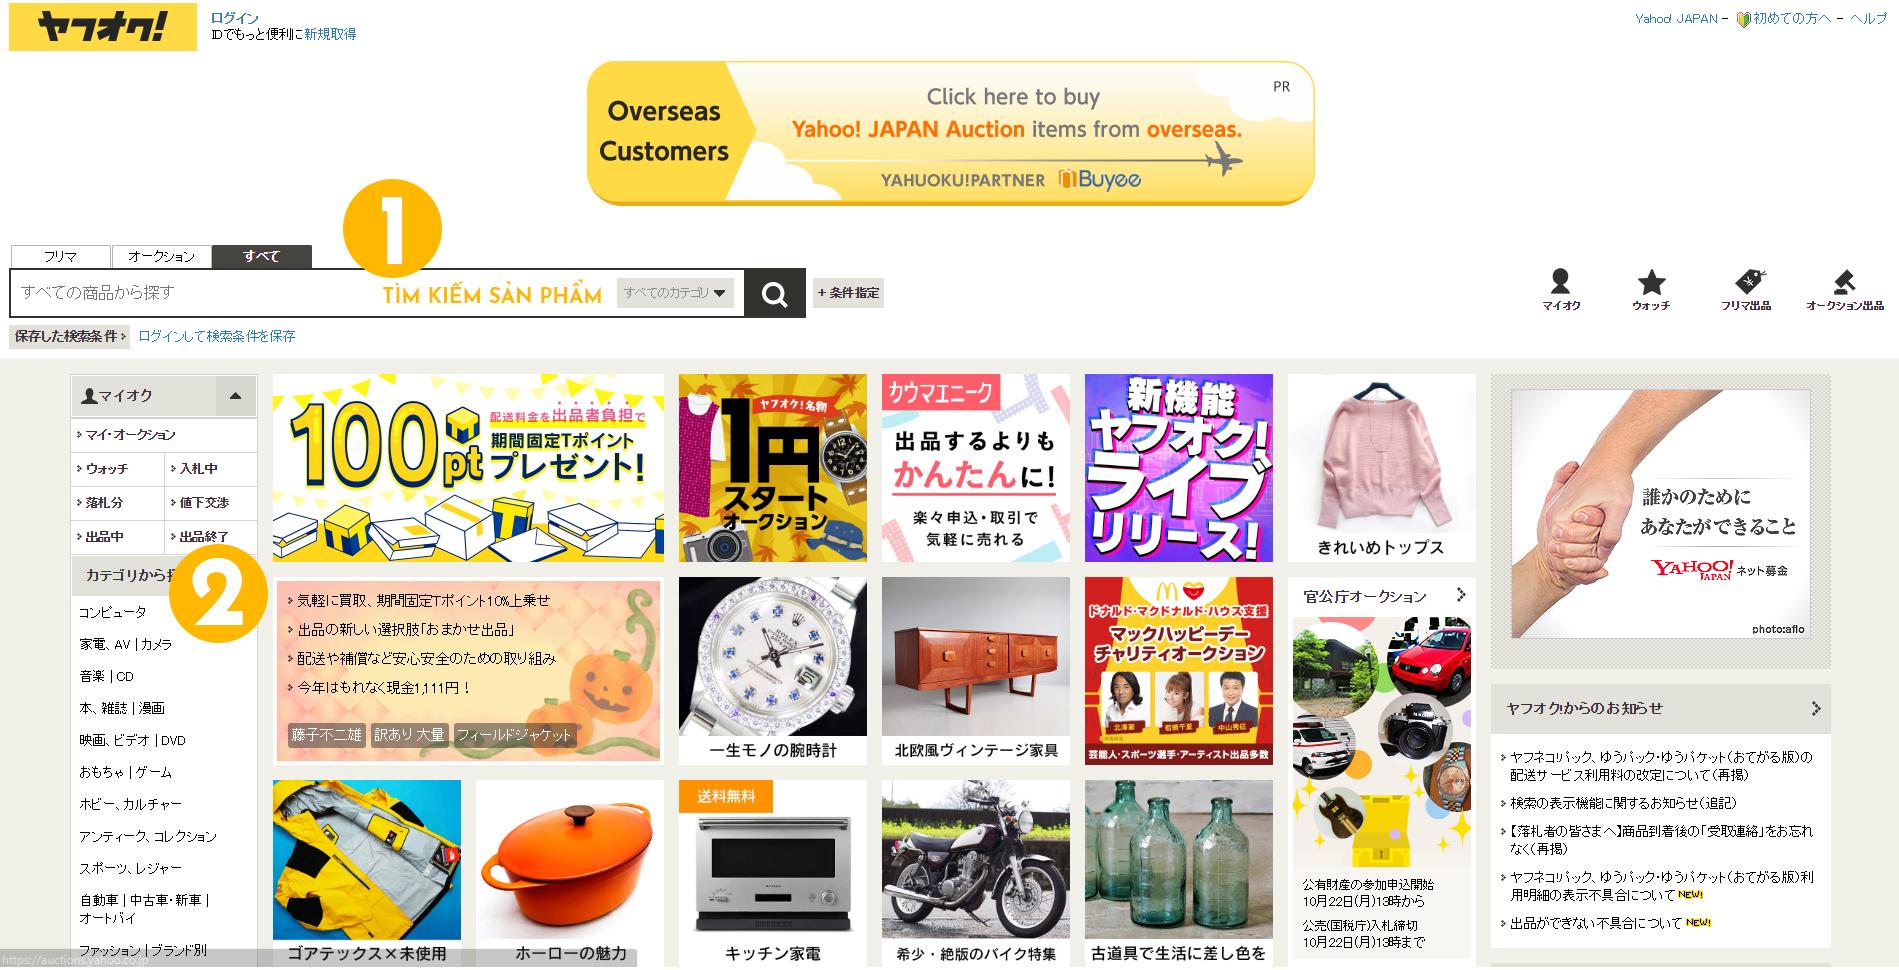 Quy trình đấu giá hàng Nhật trên Yahoo Auction